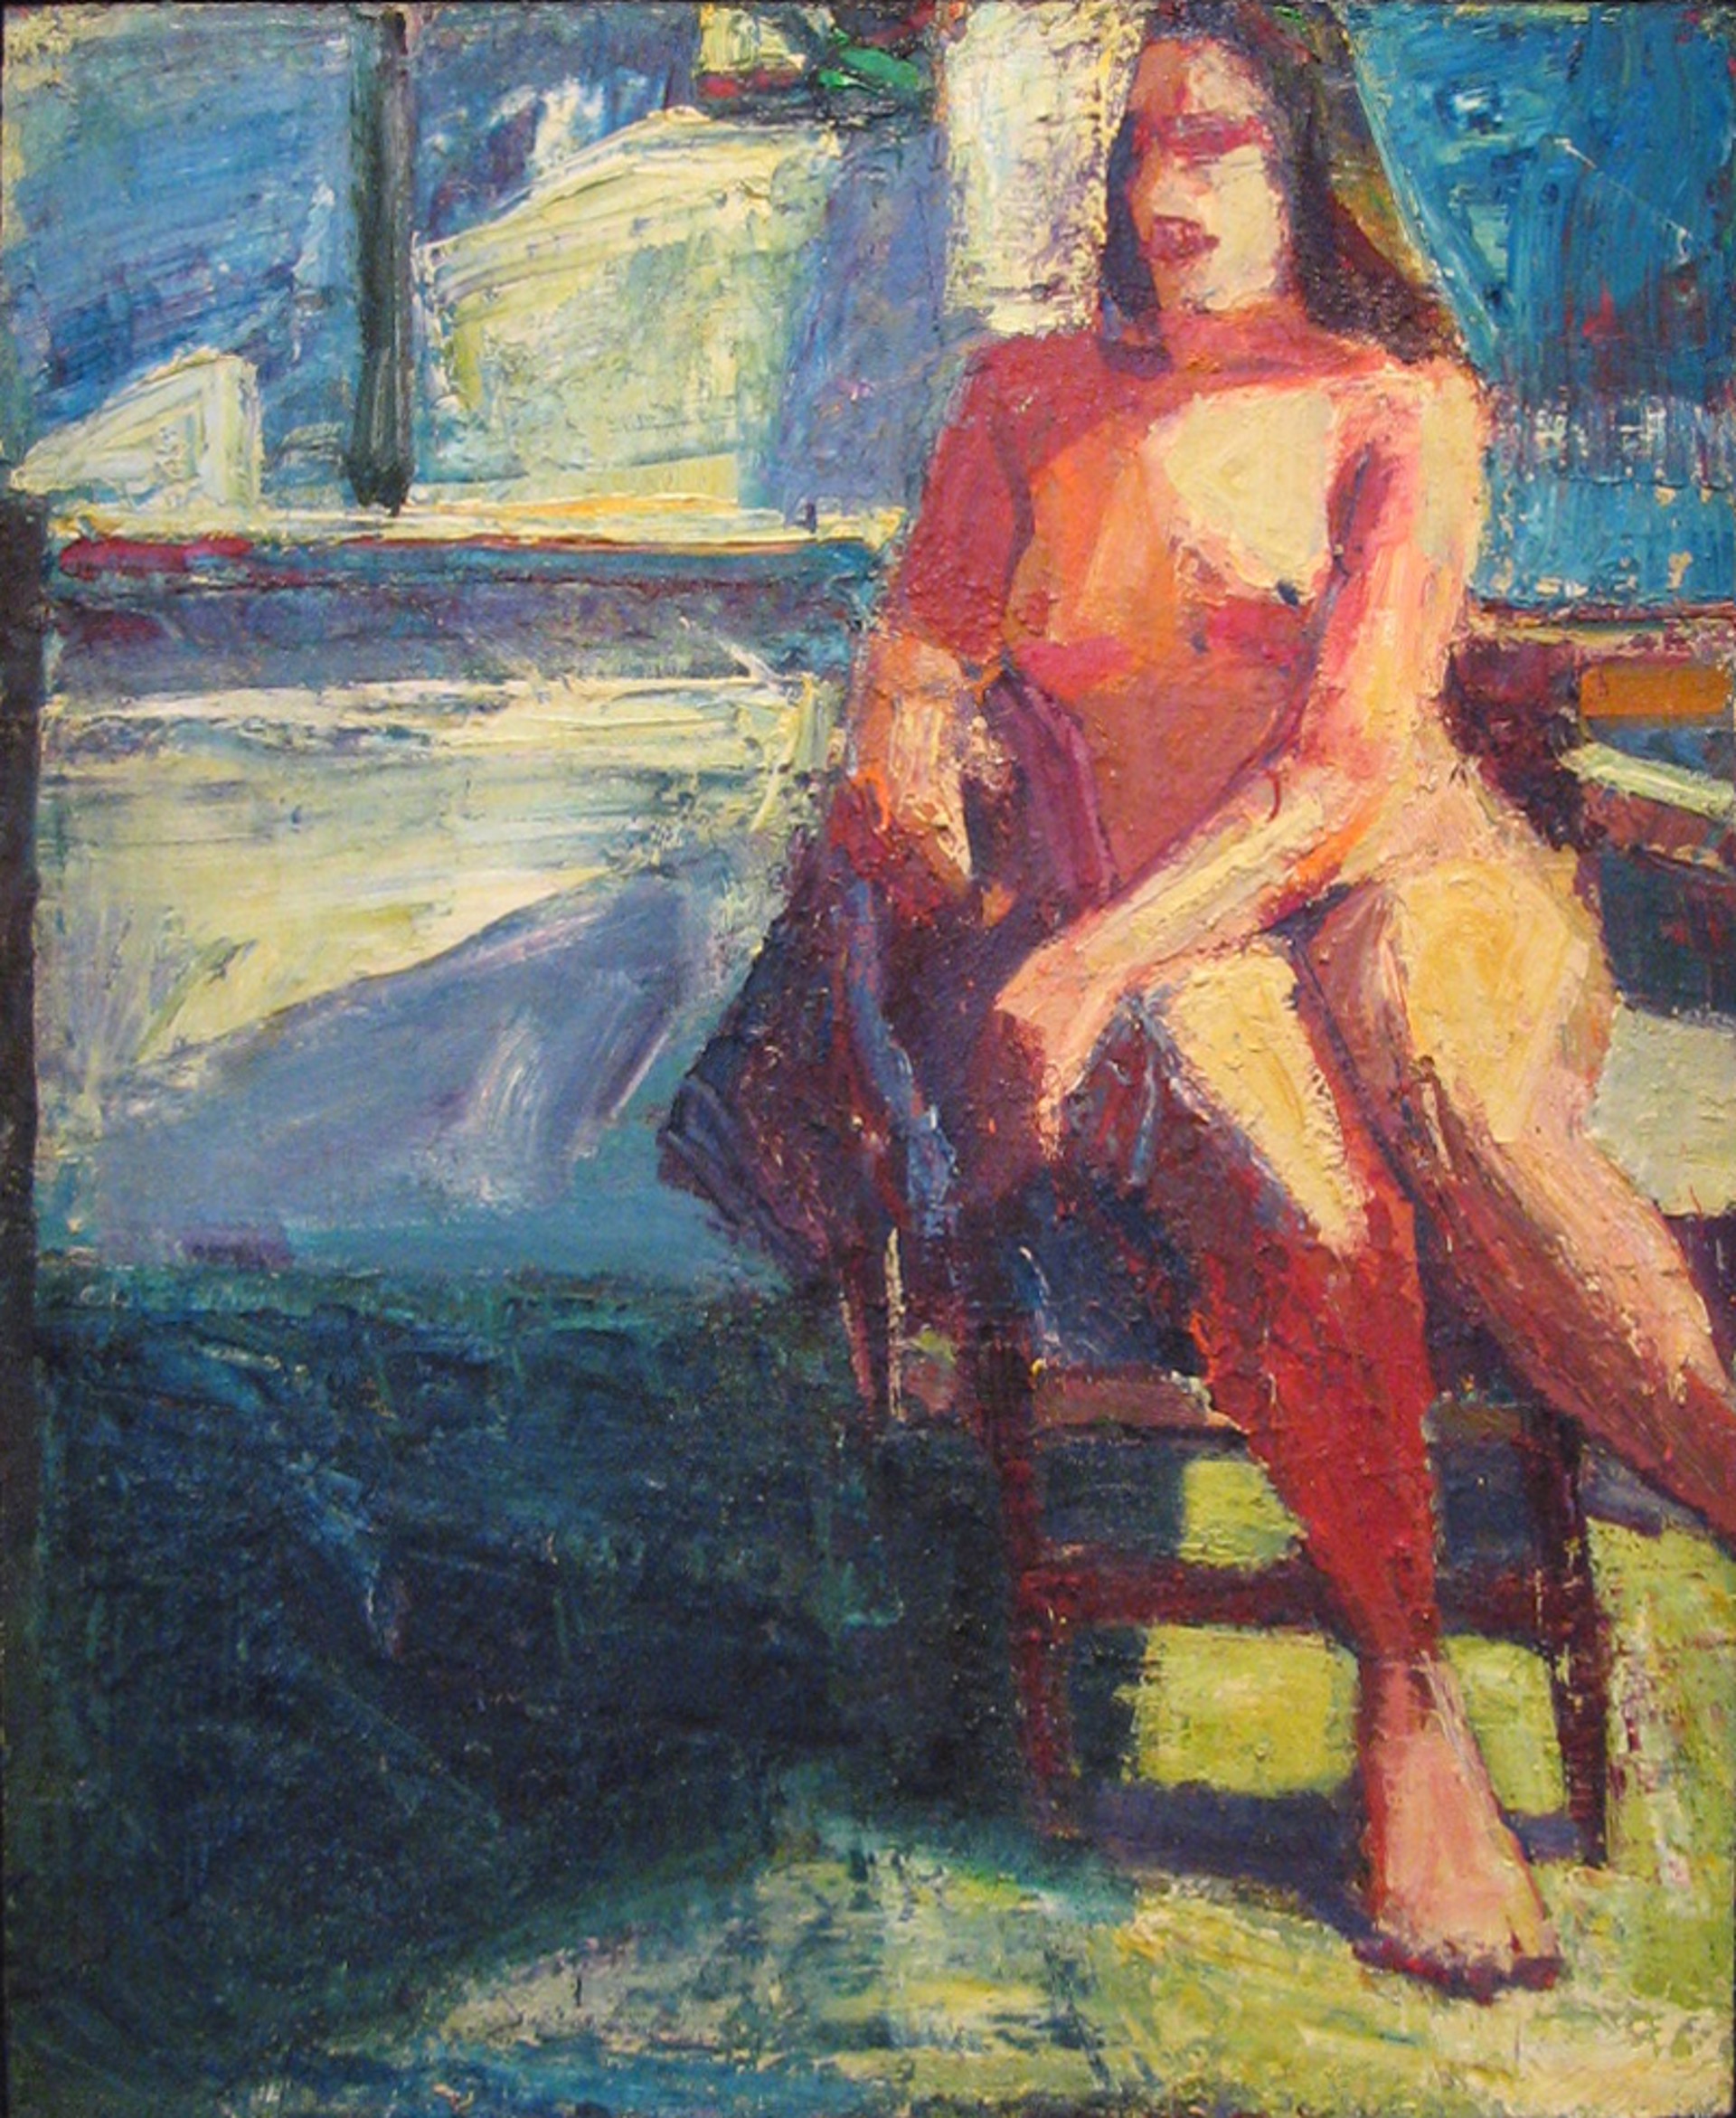 Model in Chair in Studio by Terry St. John